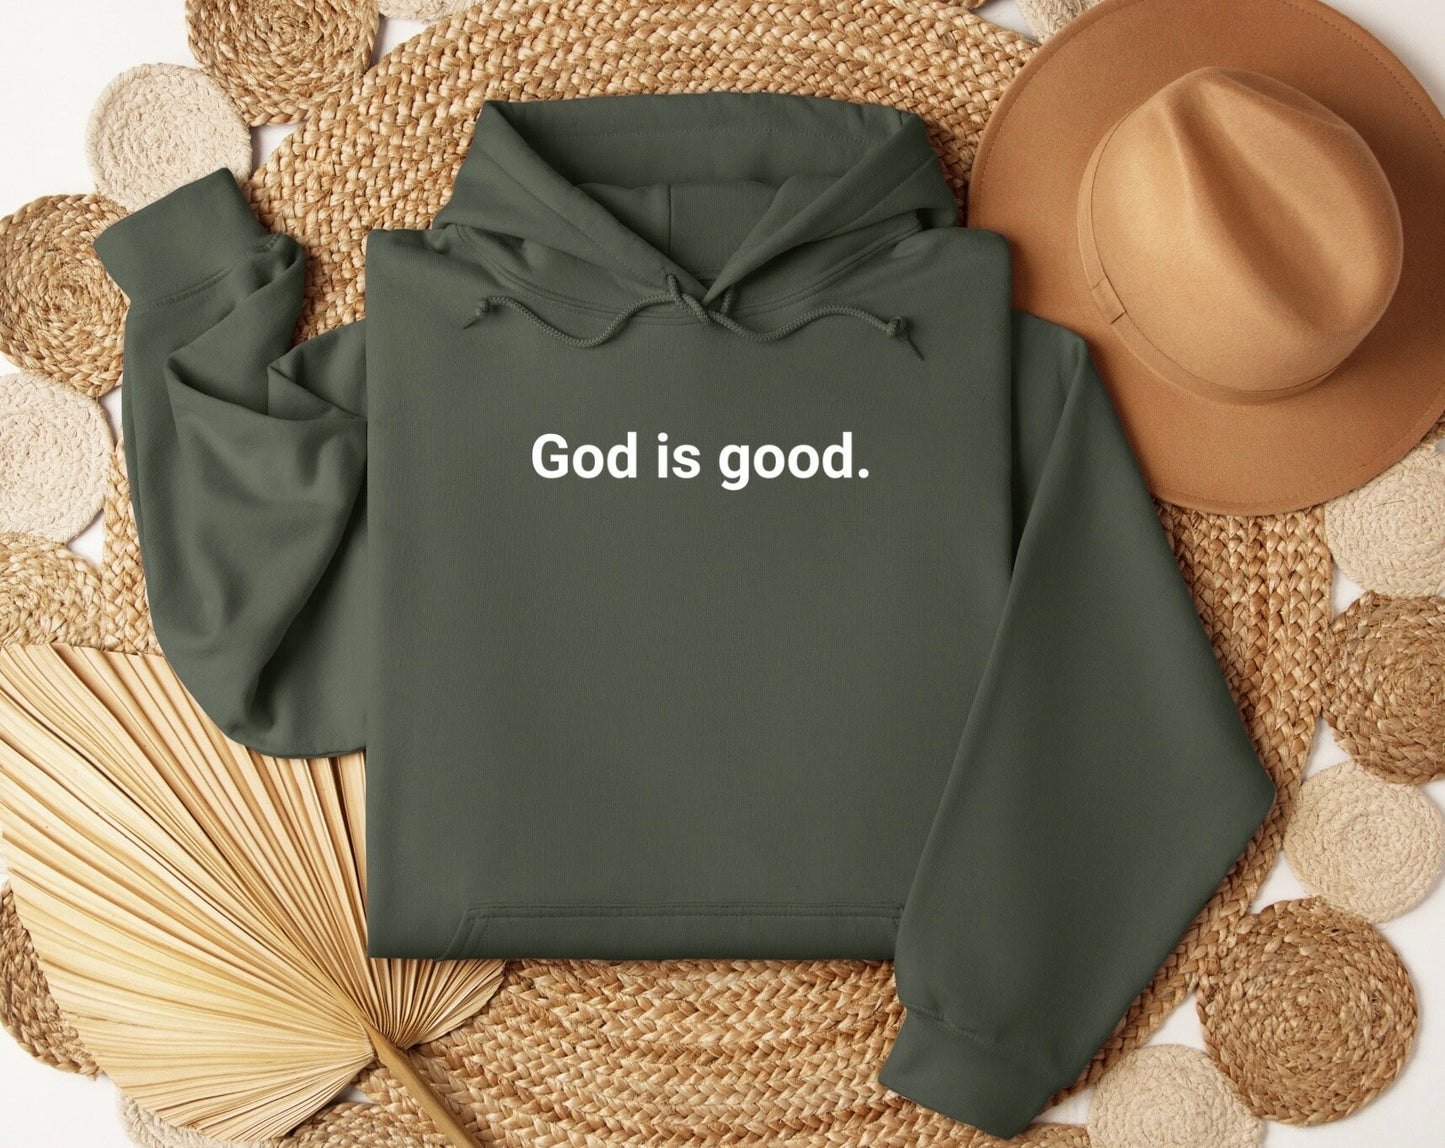 God Is God Sweatshirt, Bible Verse Tee, God Is Good Sweatshirt, Oversized Sweater, Faith Based, Christian Sweater, Christian Sweatshirt